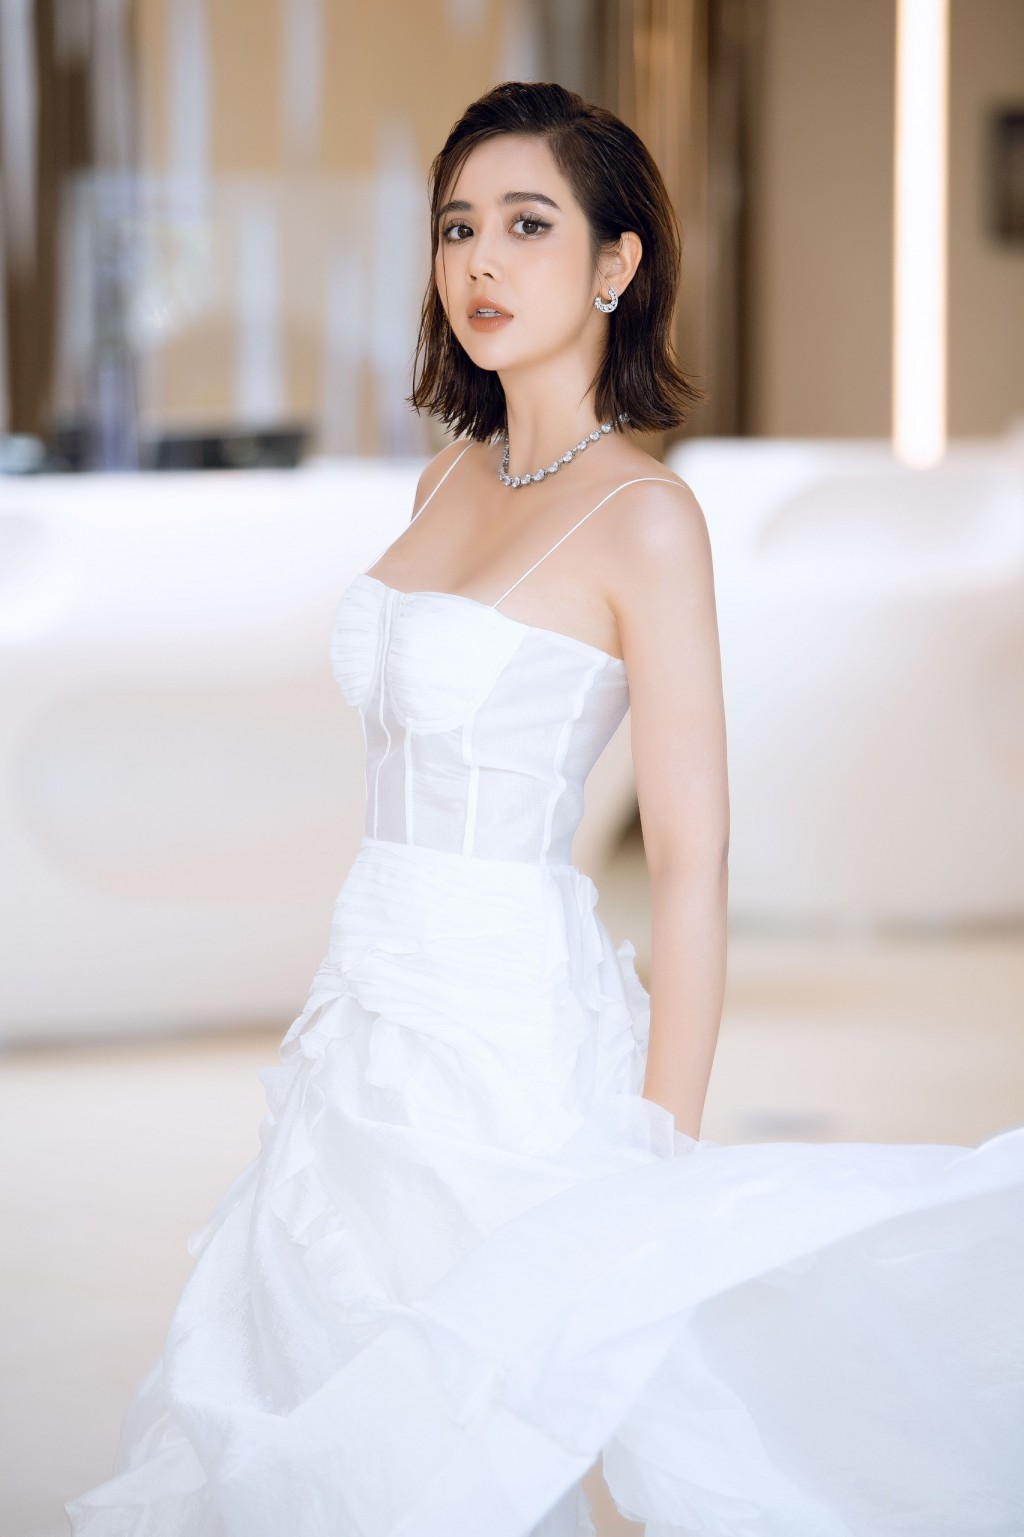 Phan Minh Huyền khiến công chúng ngây ngất với vẻ đẹp nữ thần khi diện váy trắng-5